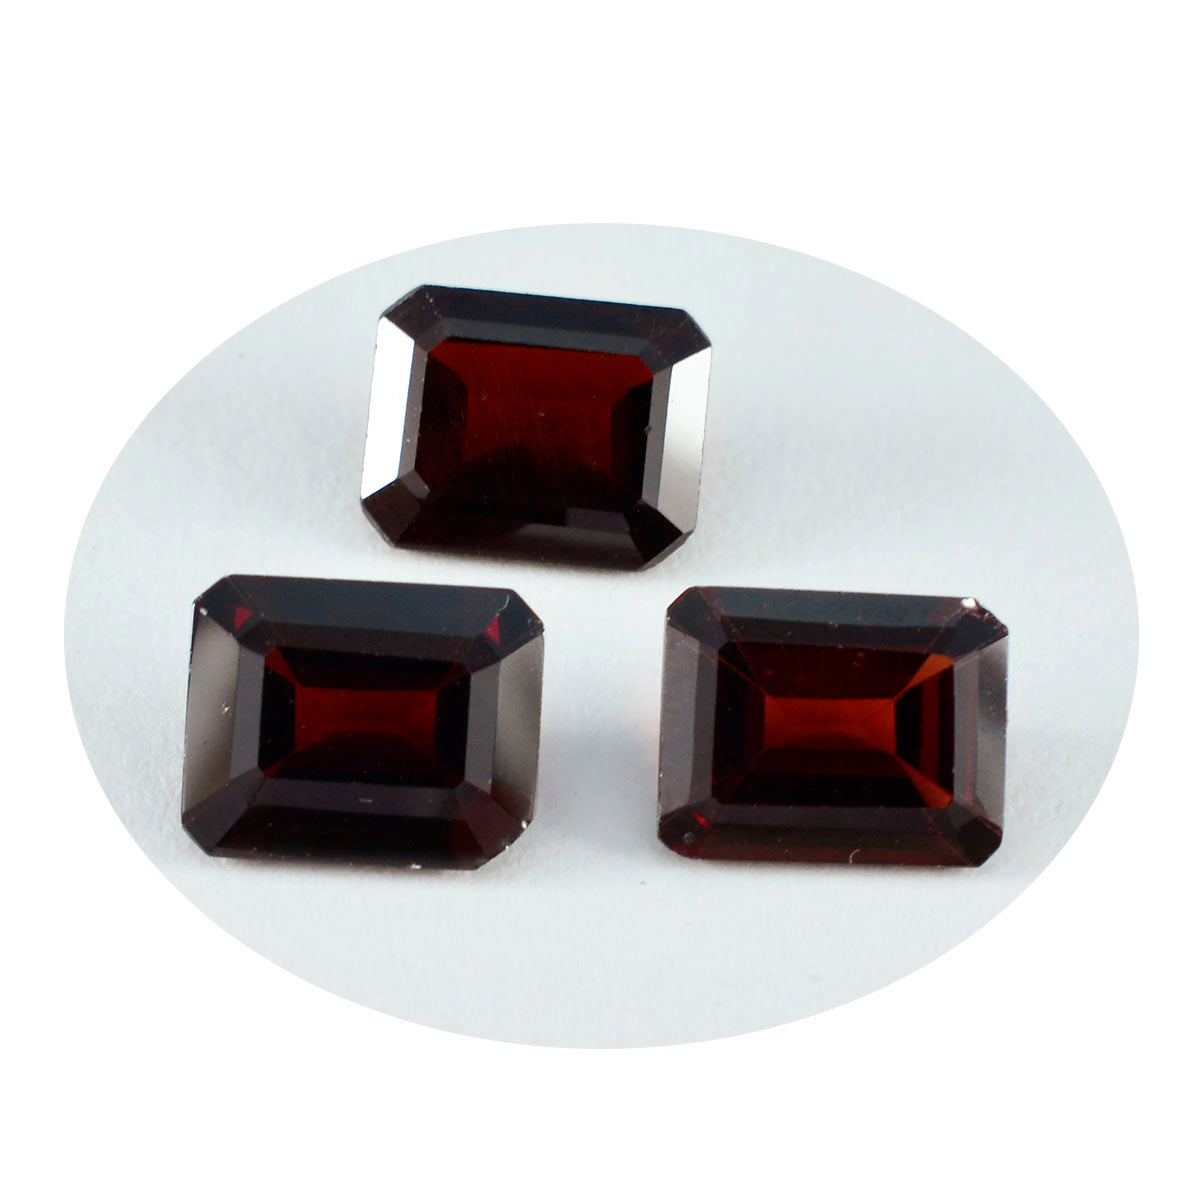 riyogems 1 шт. натуральный красный гранат ограненный 9x11 мм восьмиугольной формы, привлекательный качественный драгоценный камень